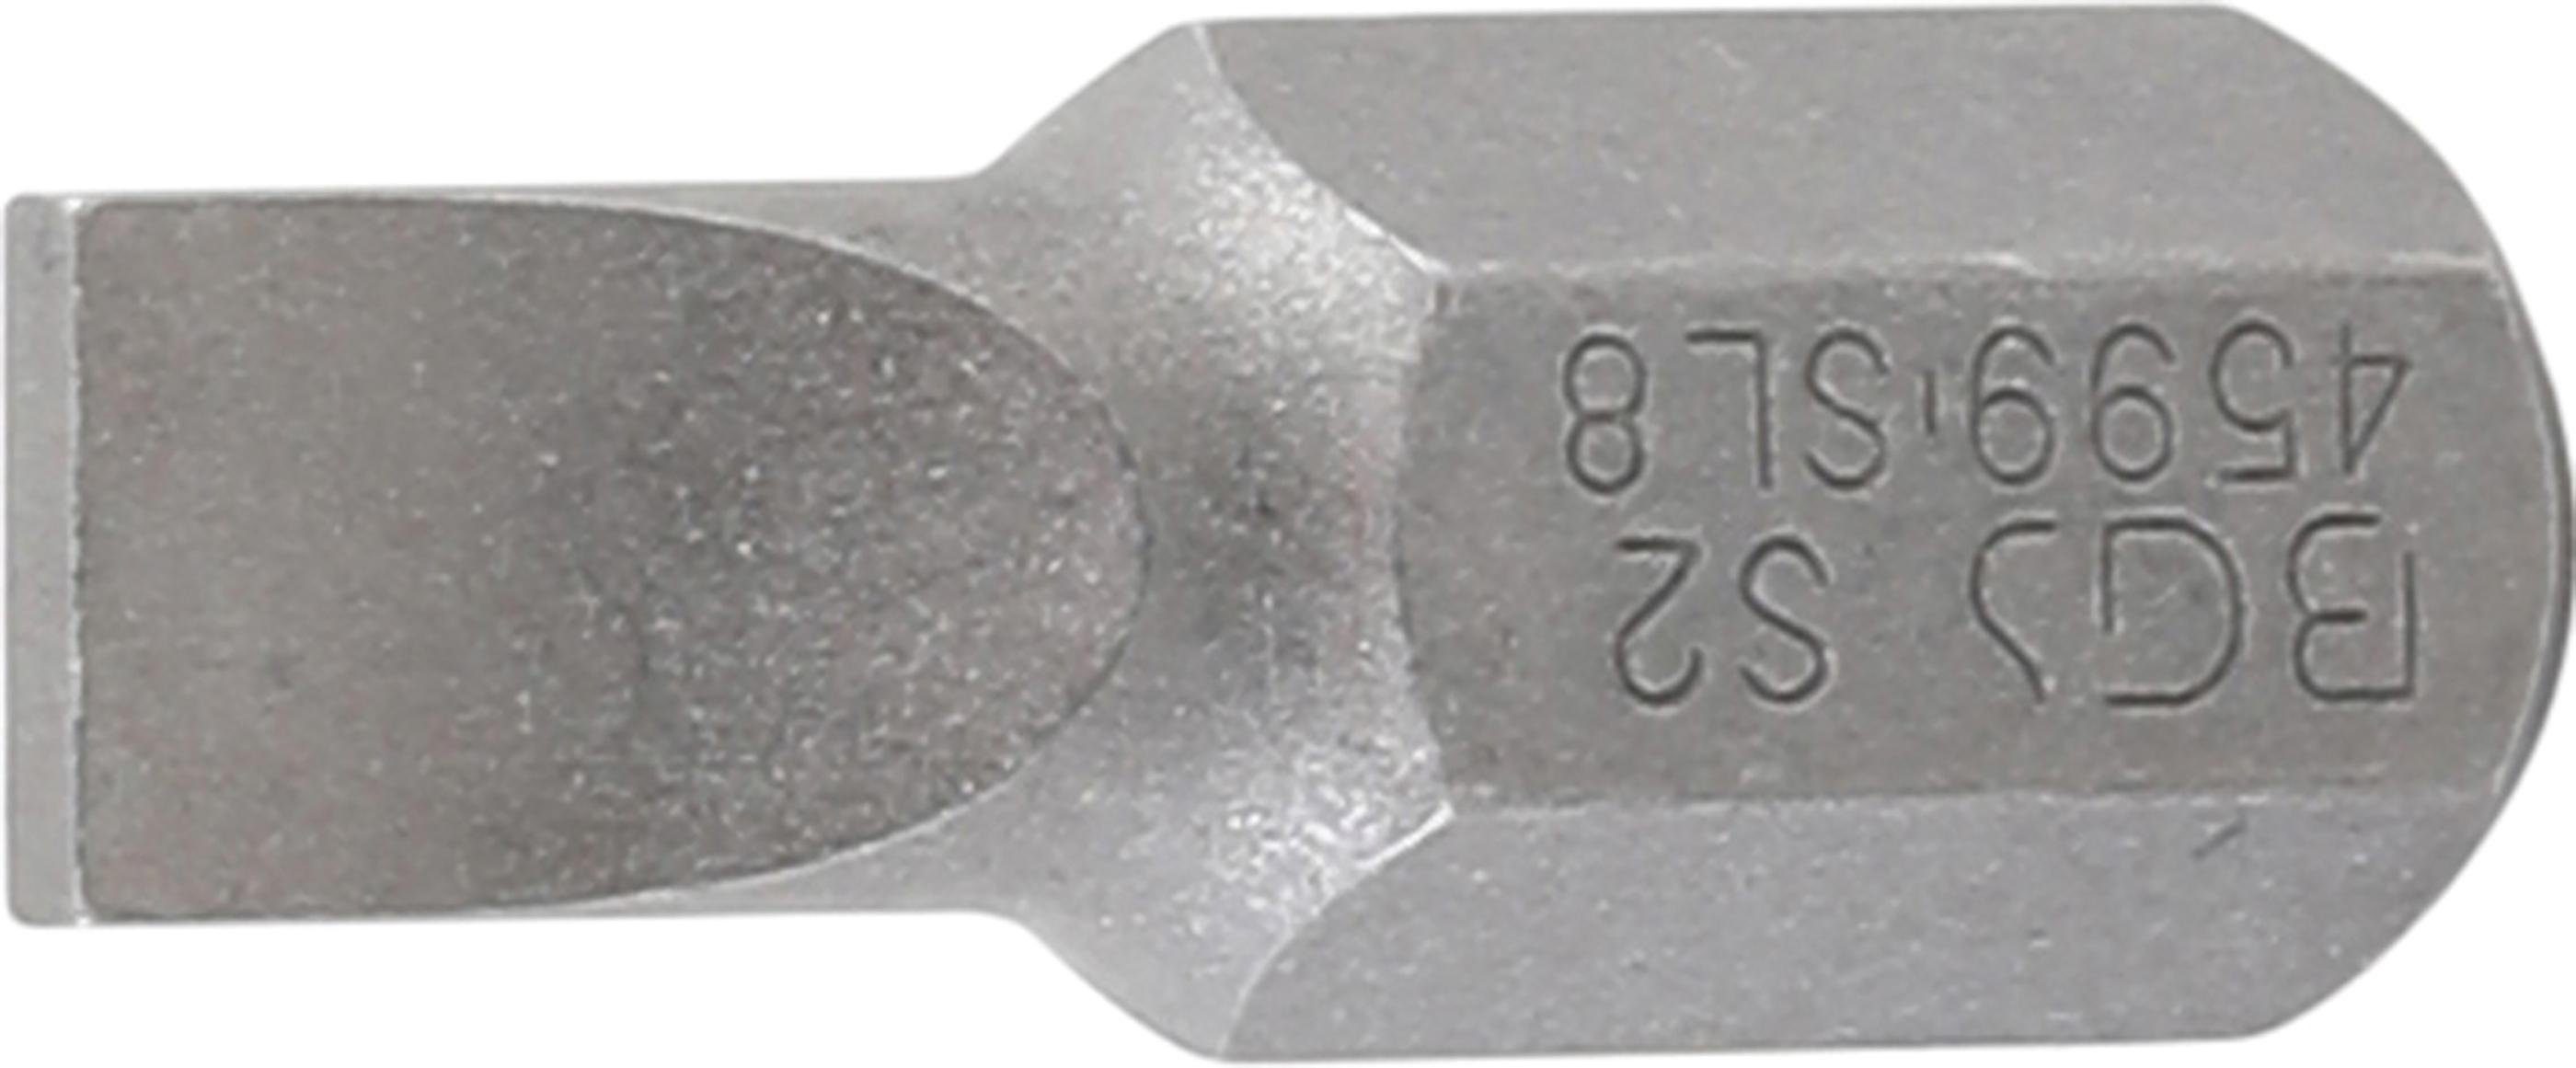 BGS technic Bit-Schraubendreher Bit, Länge 30 mm, Antrieb Außensechskant 10 mm (3/8), Schlitz 8 mm